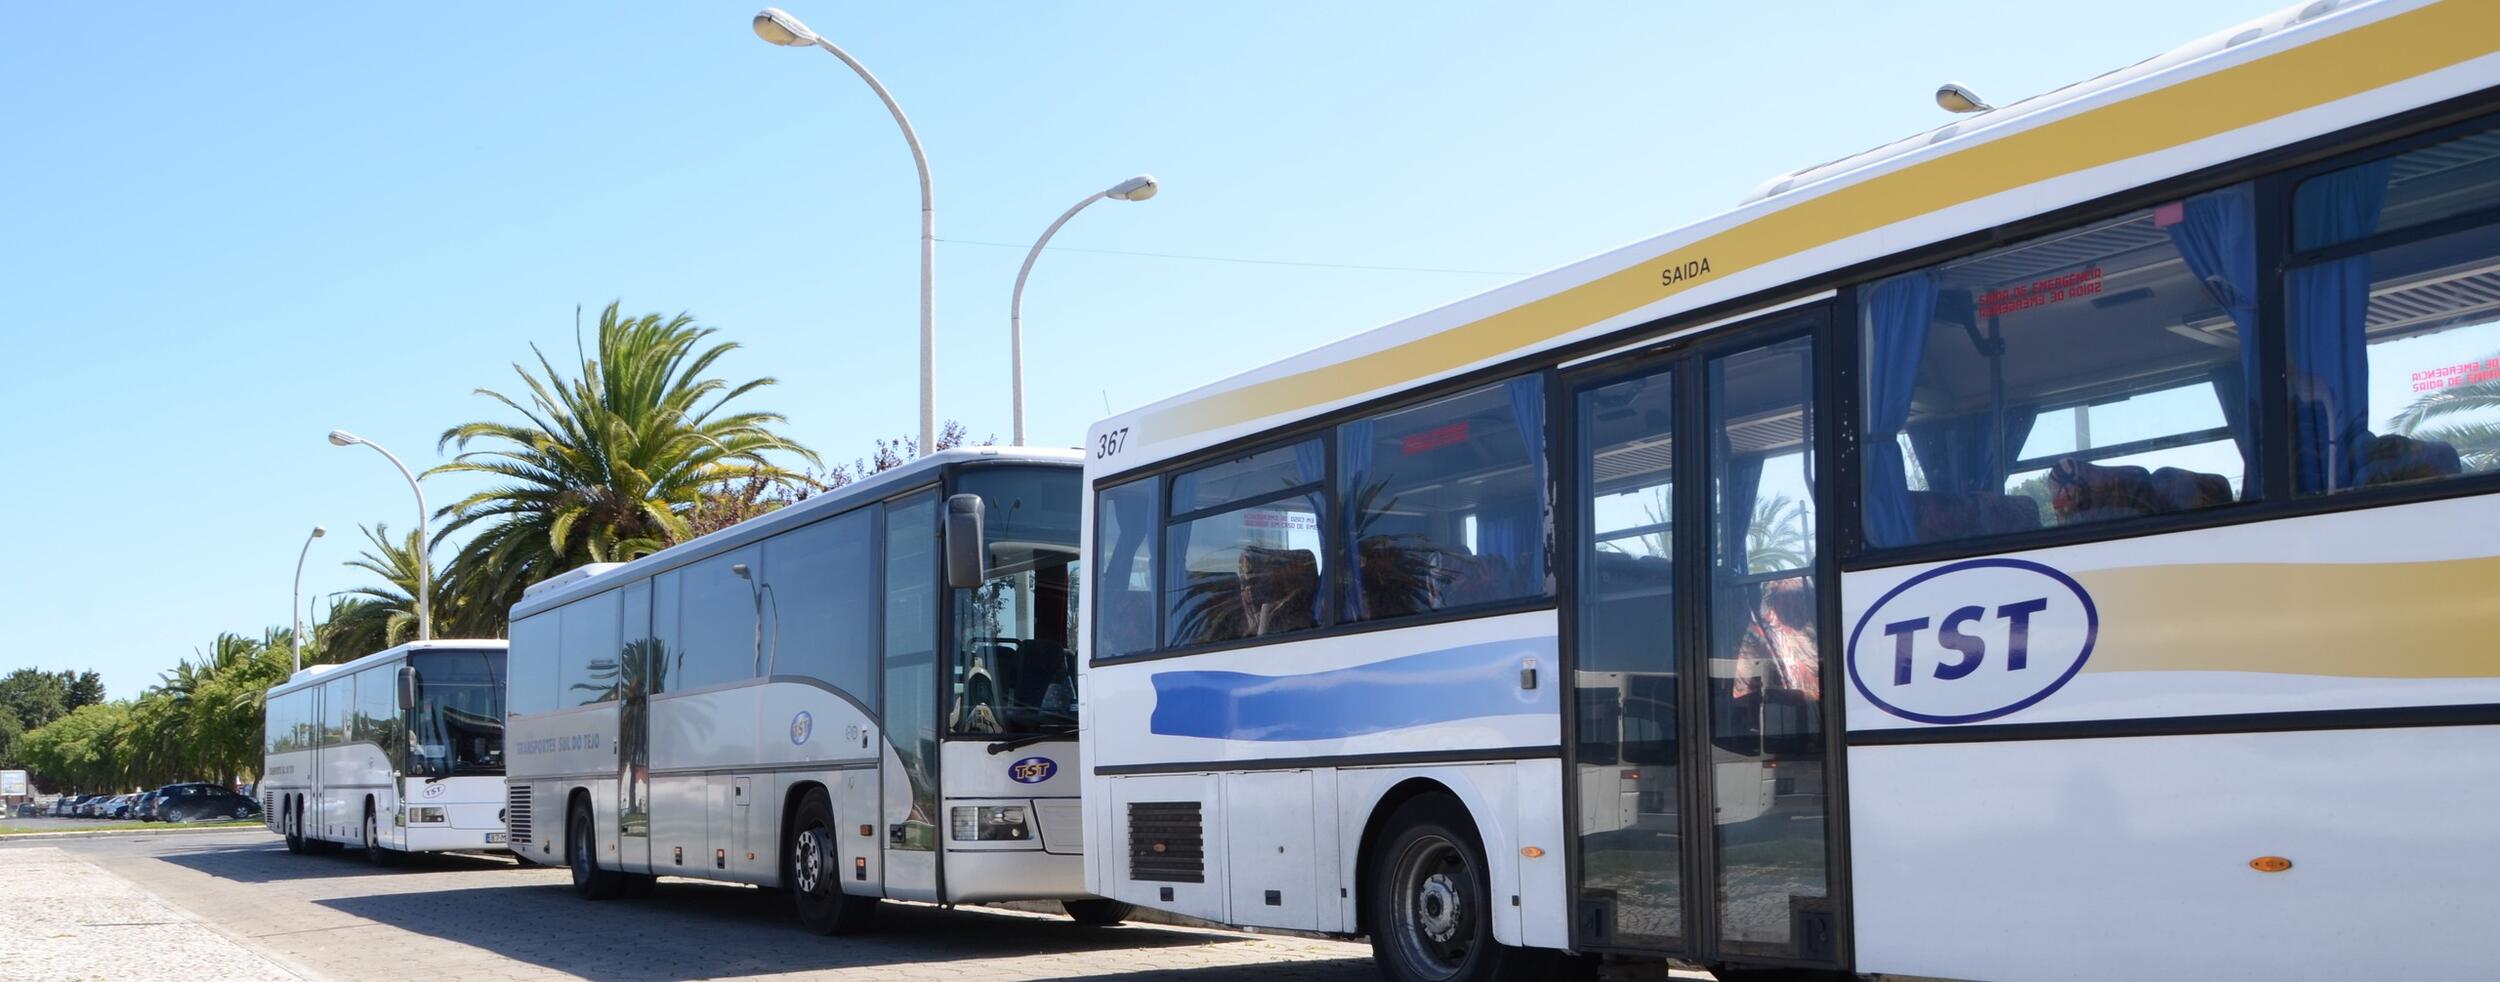 Informação à População - Reforço nas carreiras de transporte público no Montijo